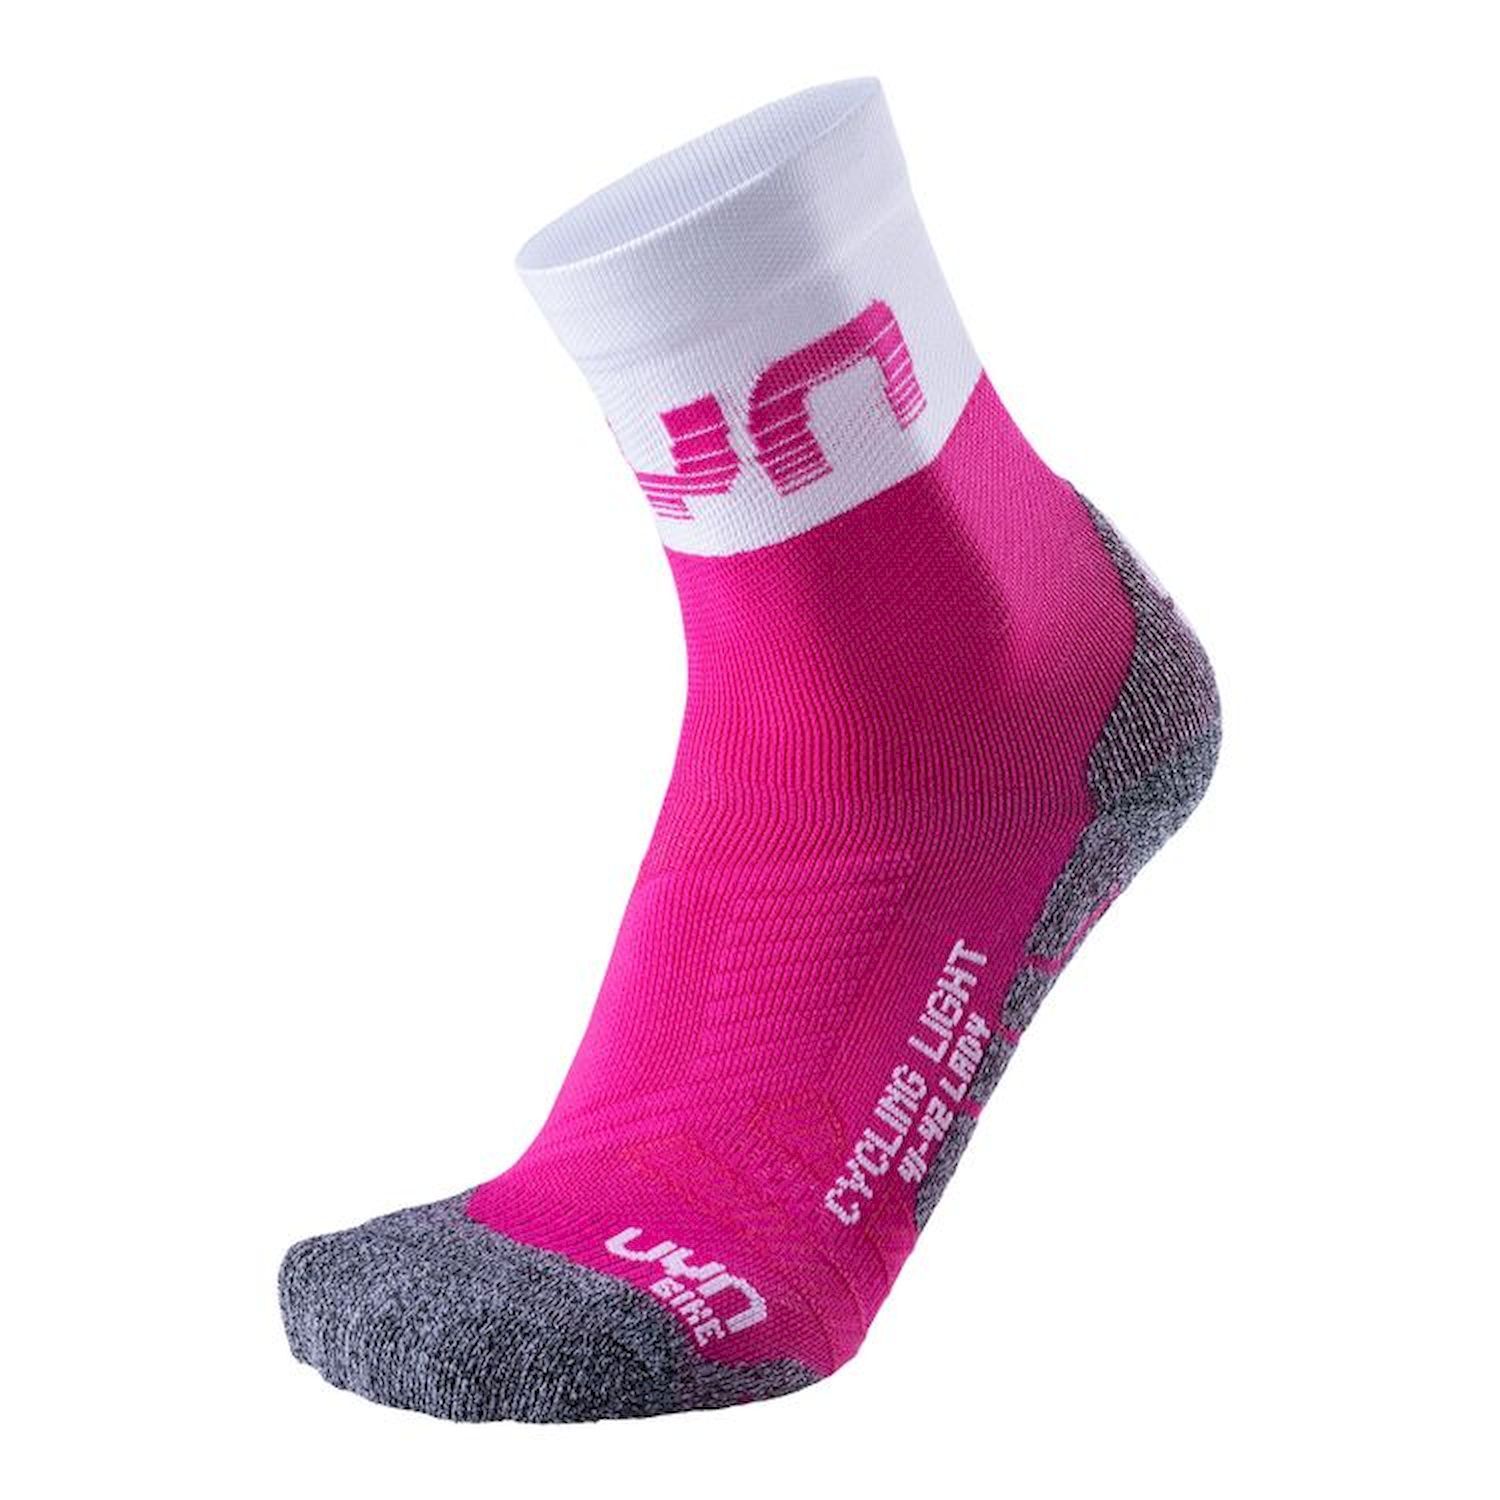 Uyn Cycling Light Socks - Cycling socks - Women's